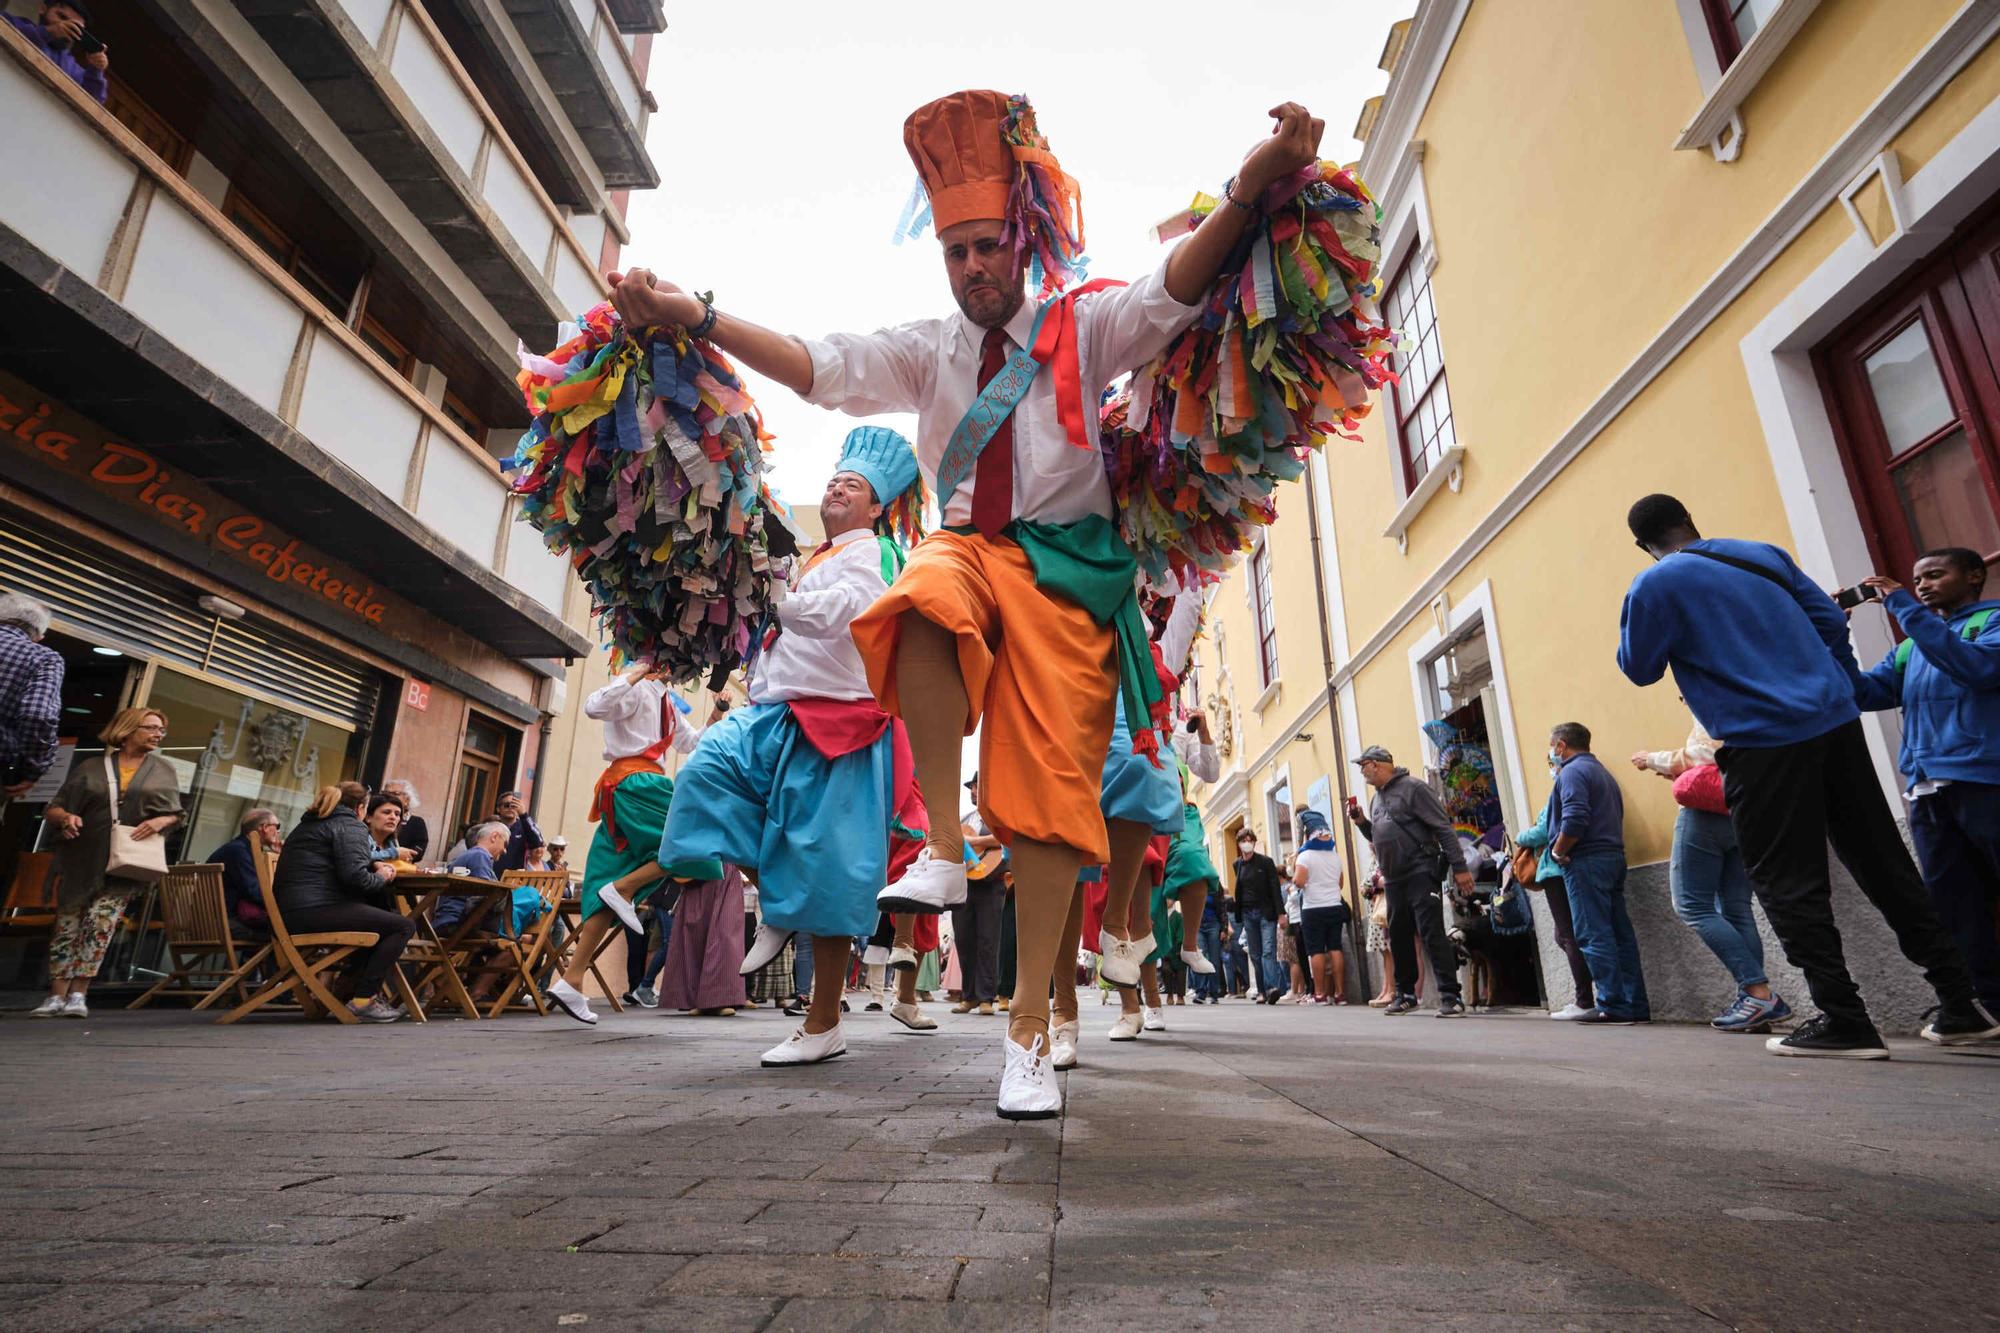 Muestra de las danzas rituales de Tenerife